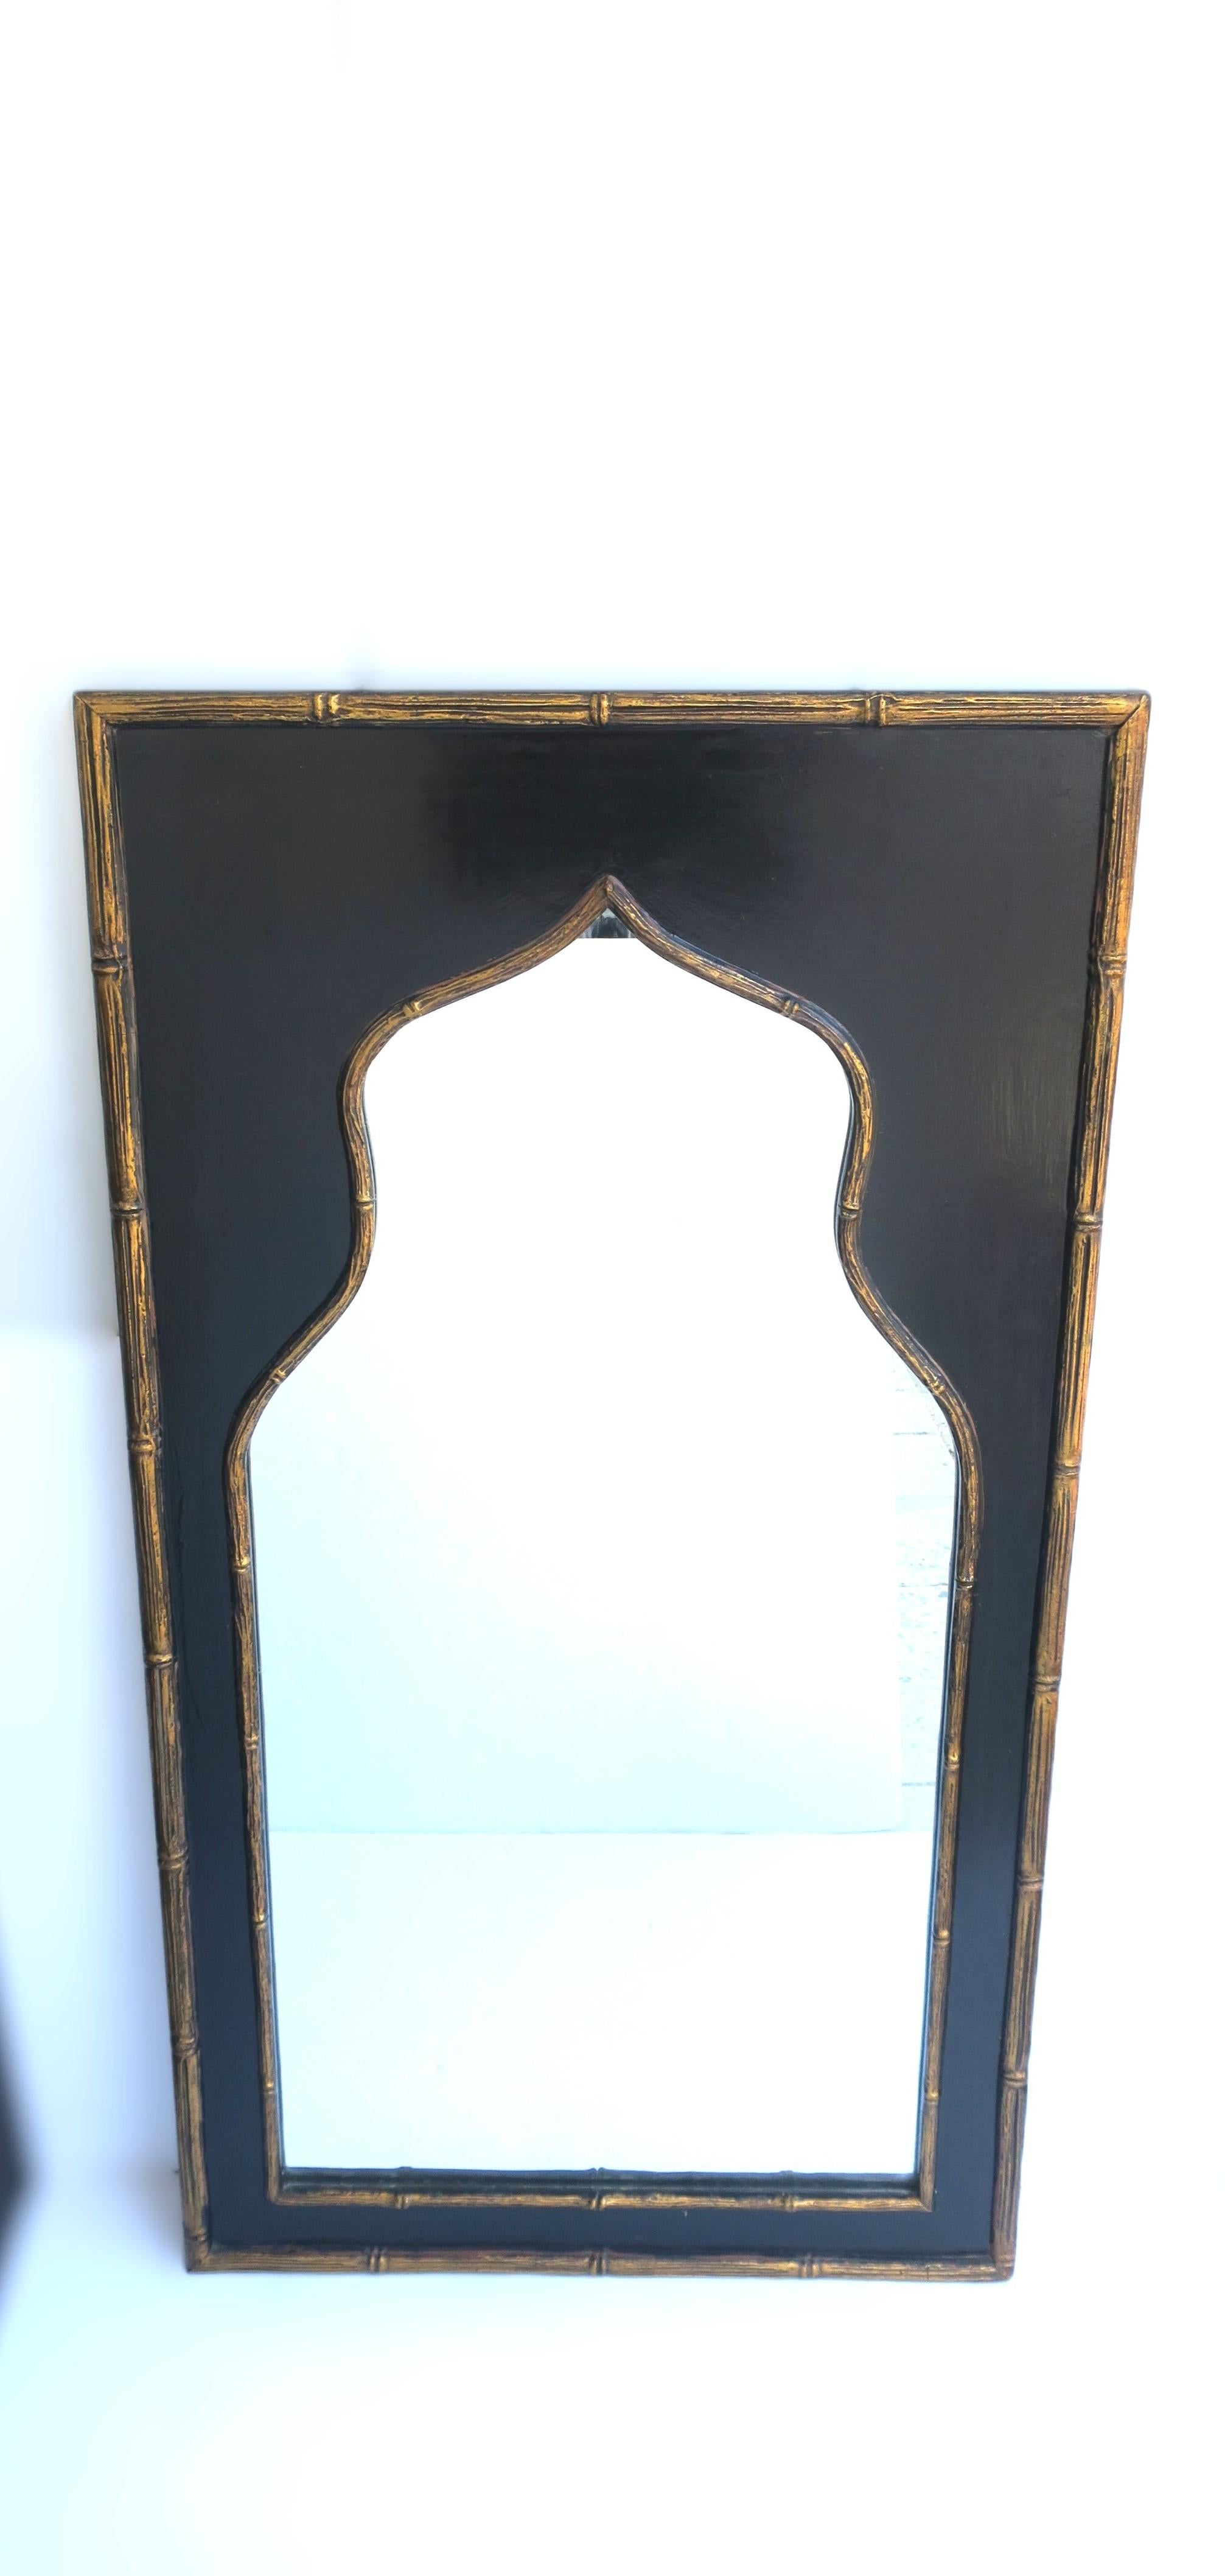 Magnifique miroir mural noir et doré avec des détails en faux bambou, de style mauresque, vers le début du milieu du XXe siècle, années 1940, États-Unis. Le miroir est rectangulaire avec un bord en faux bambou doré autour d'un fond en laque